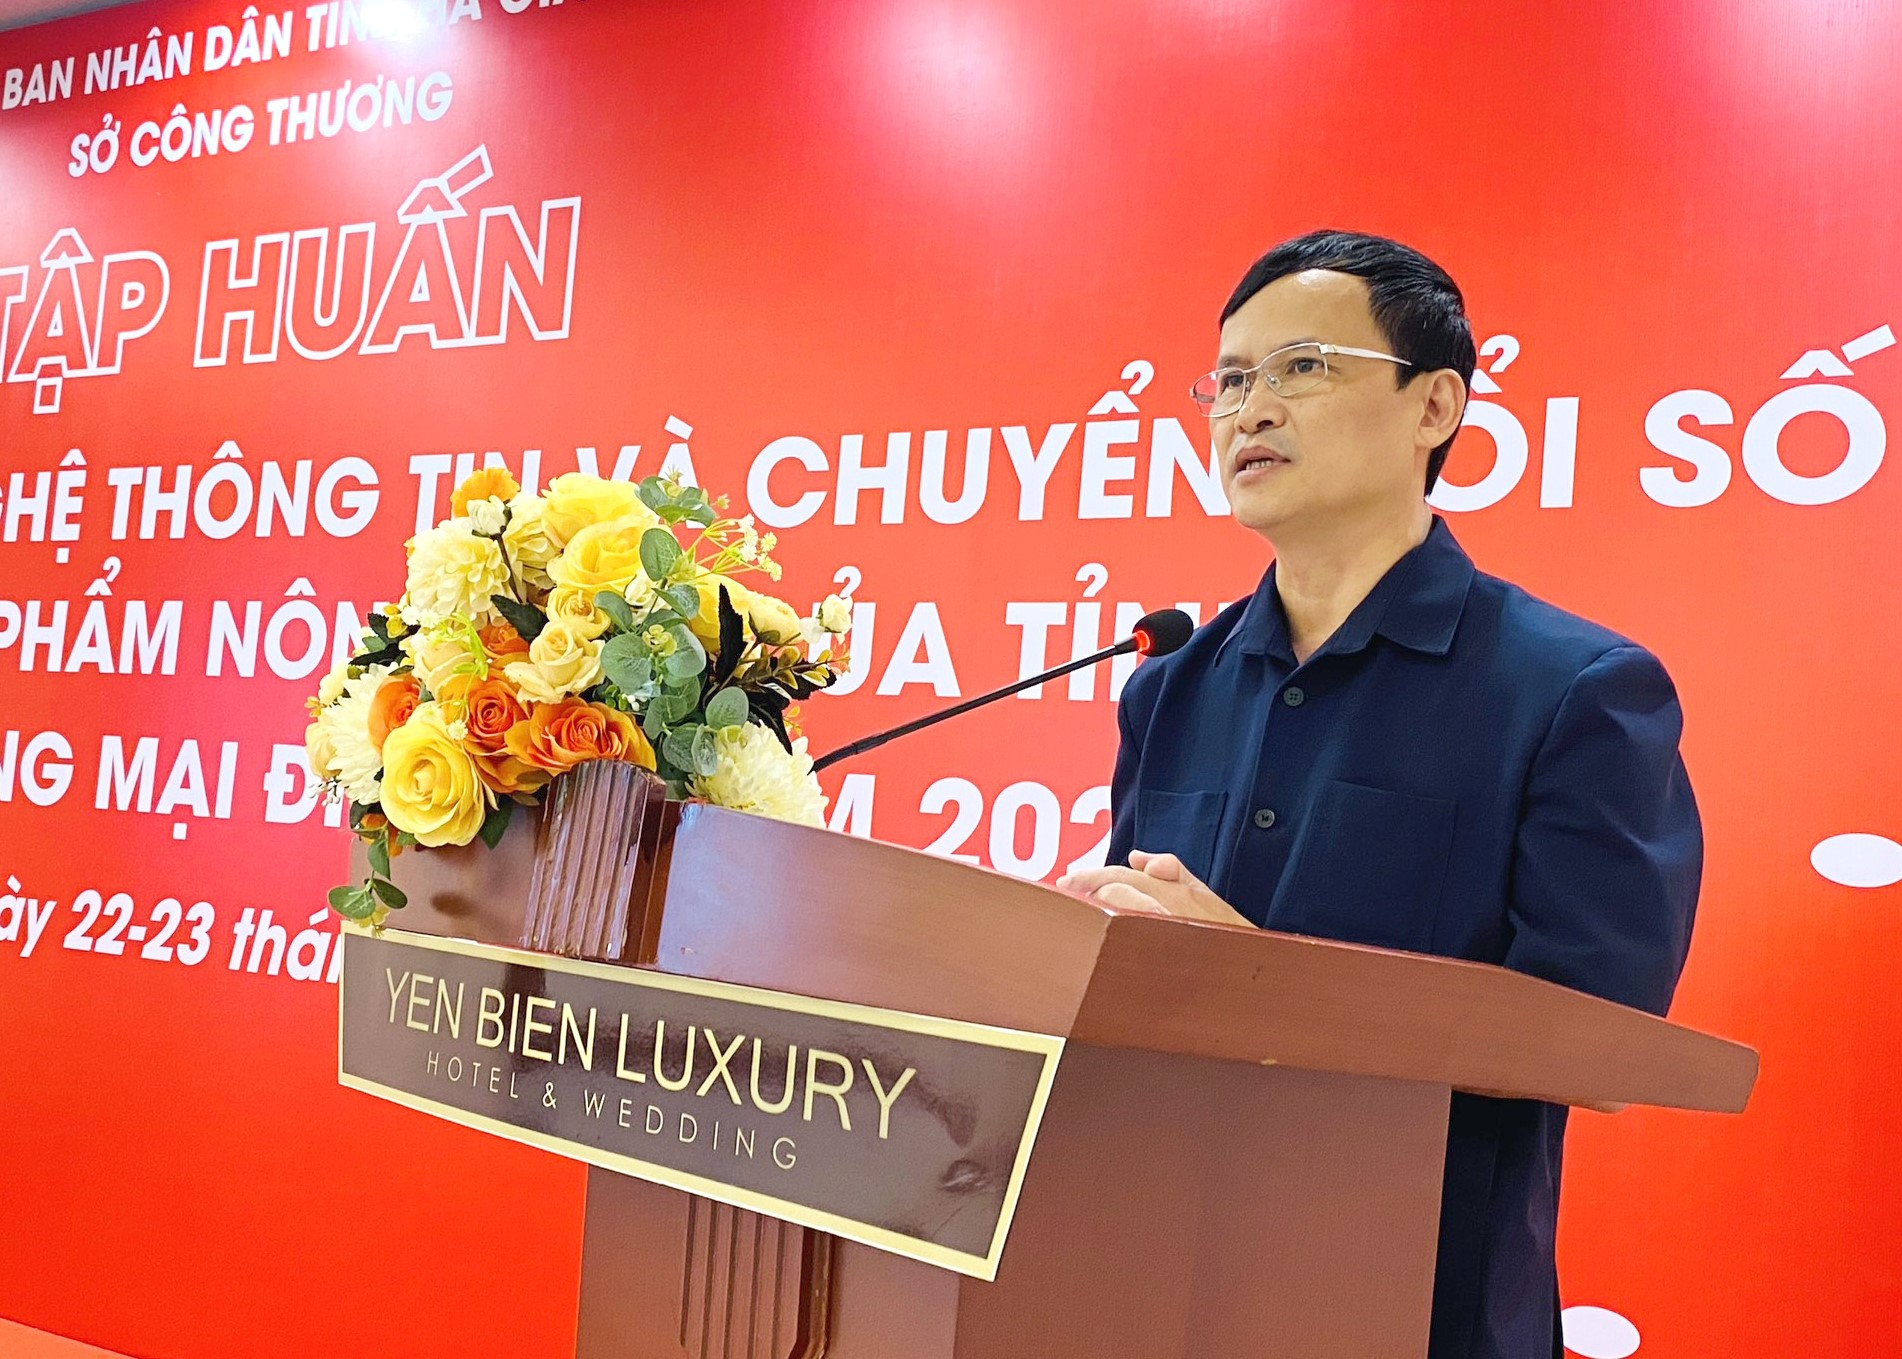 Đồng chí Triệu Tài Phong, Giám đốc Sở Công thương phát biểu khai mạc